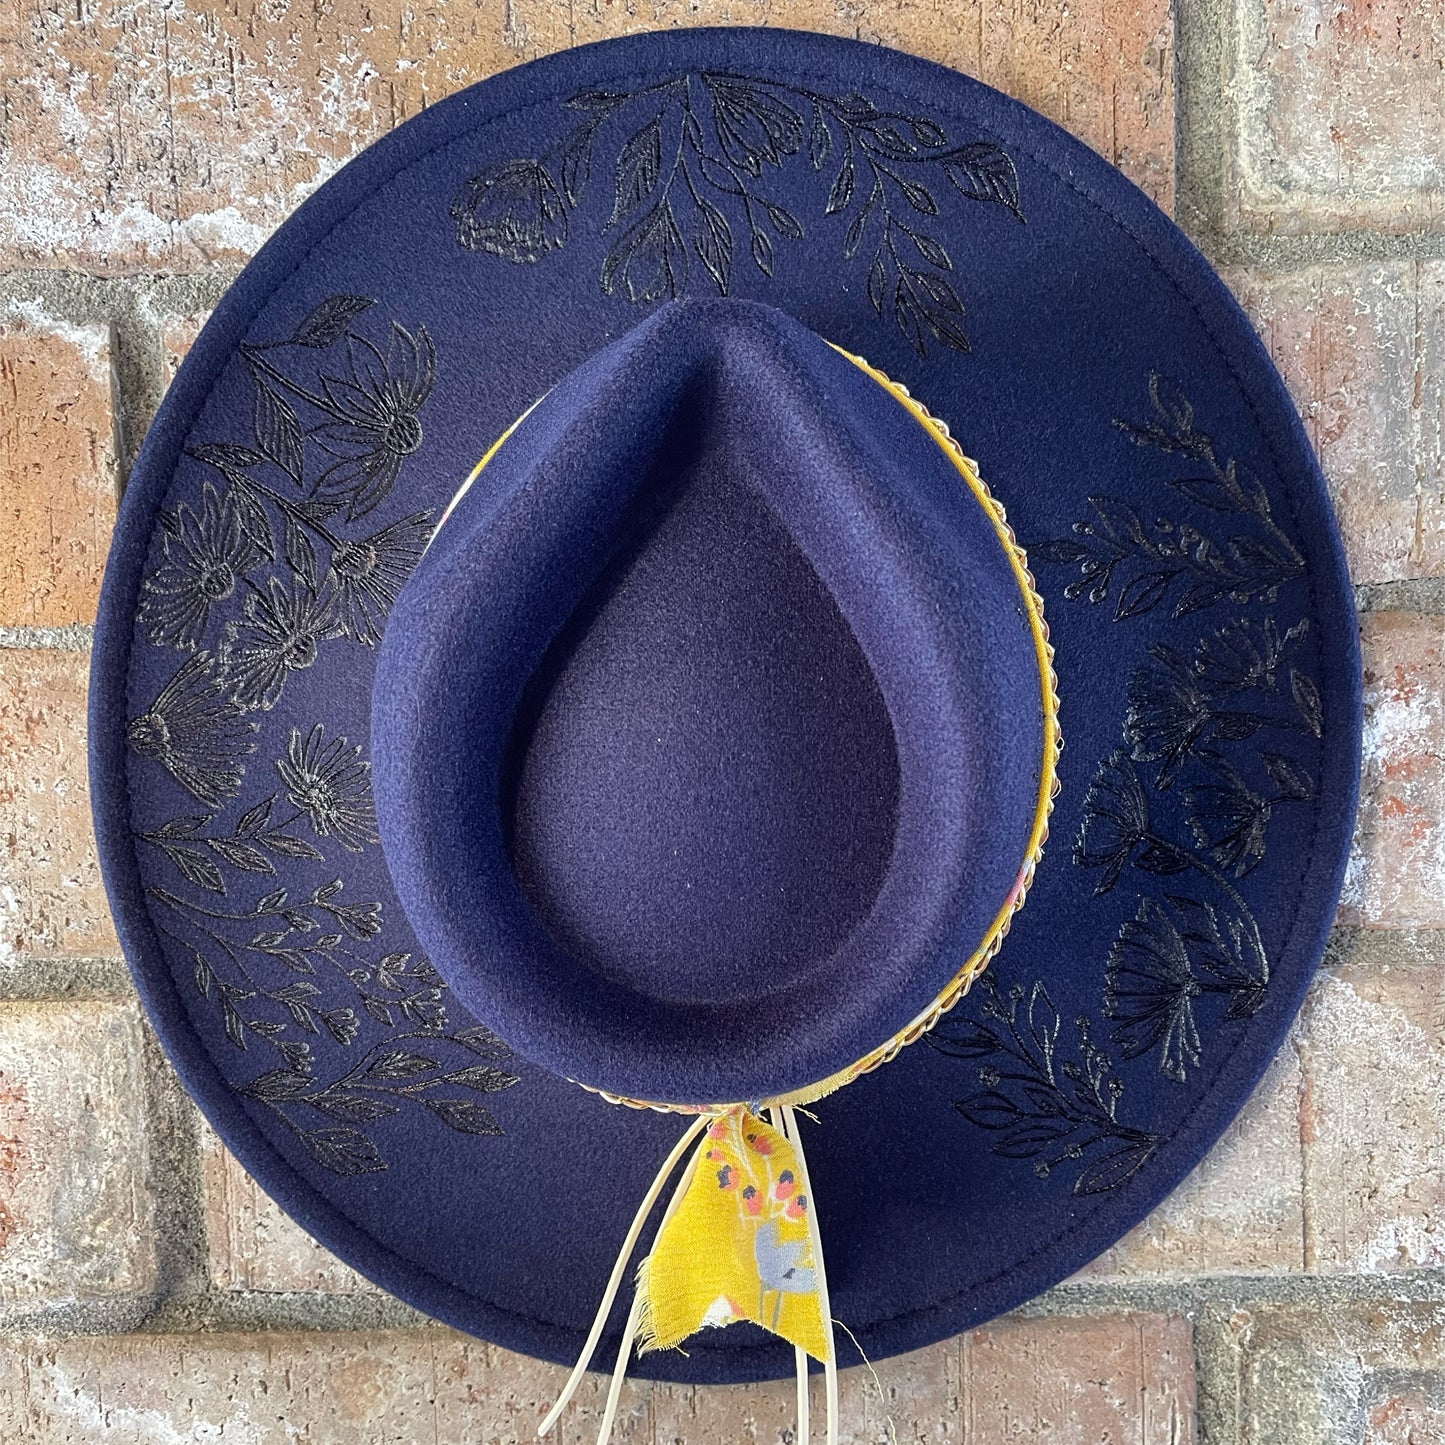 Morgan - Burned Rancher Hat